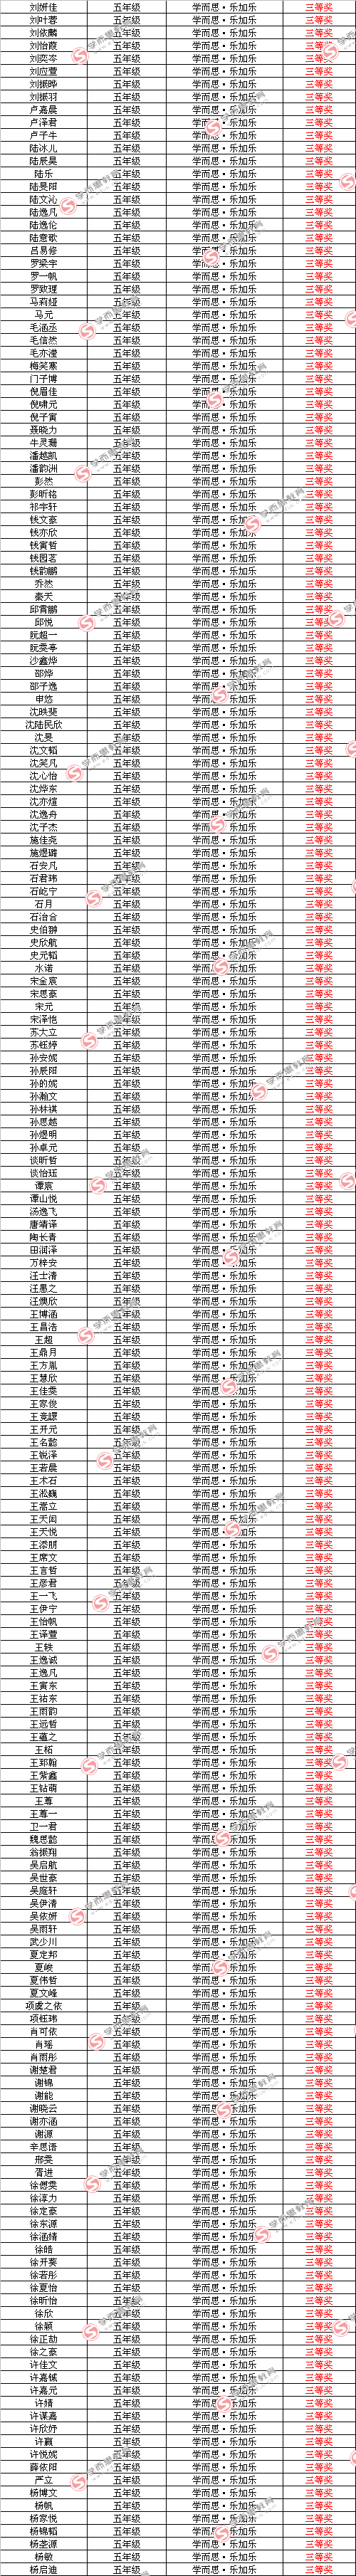 第十届中环杯决赛入围名单（五年级组）3